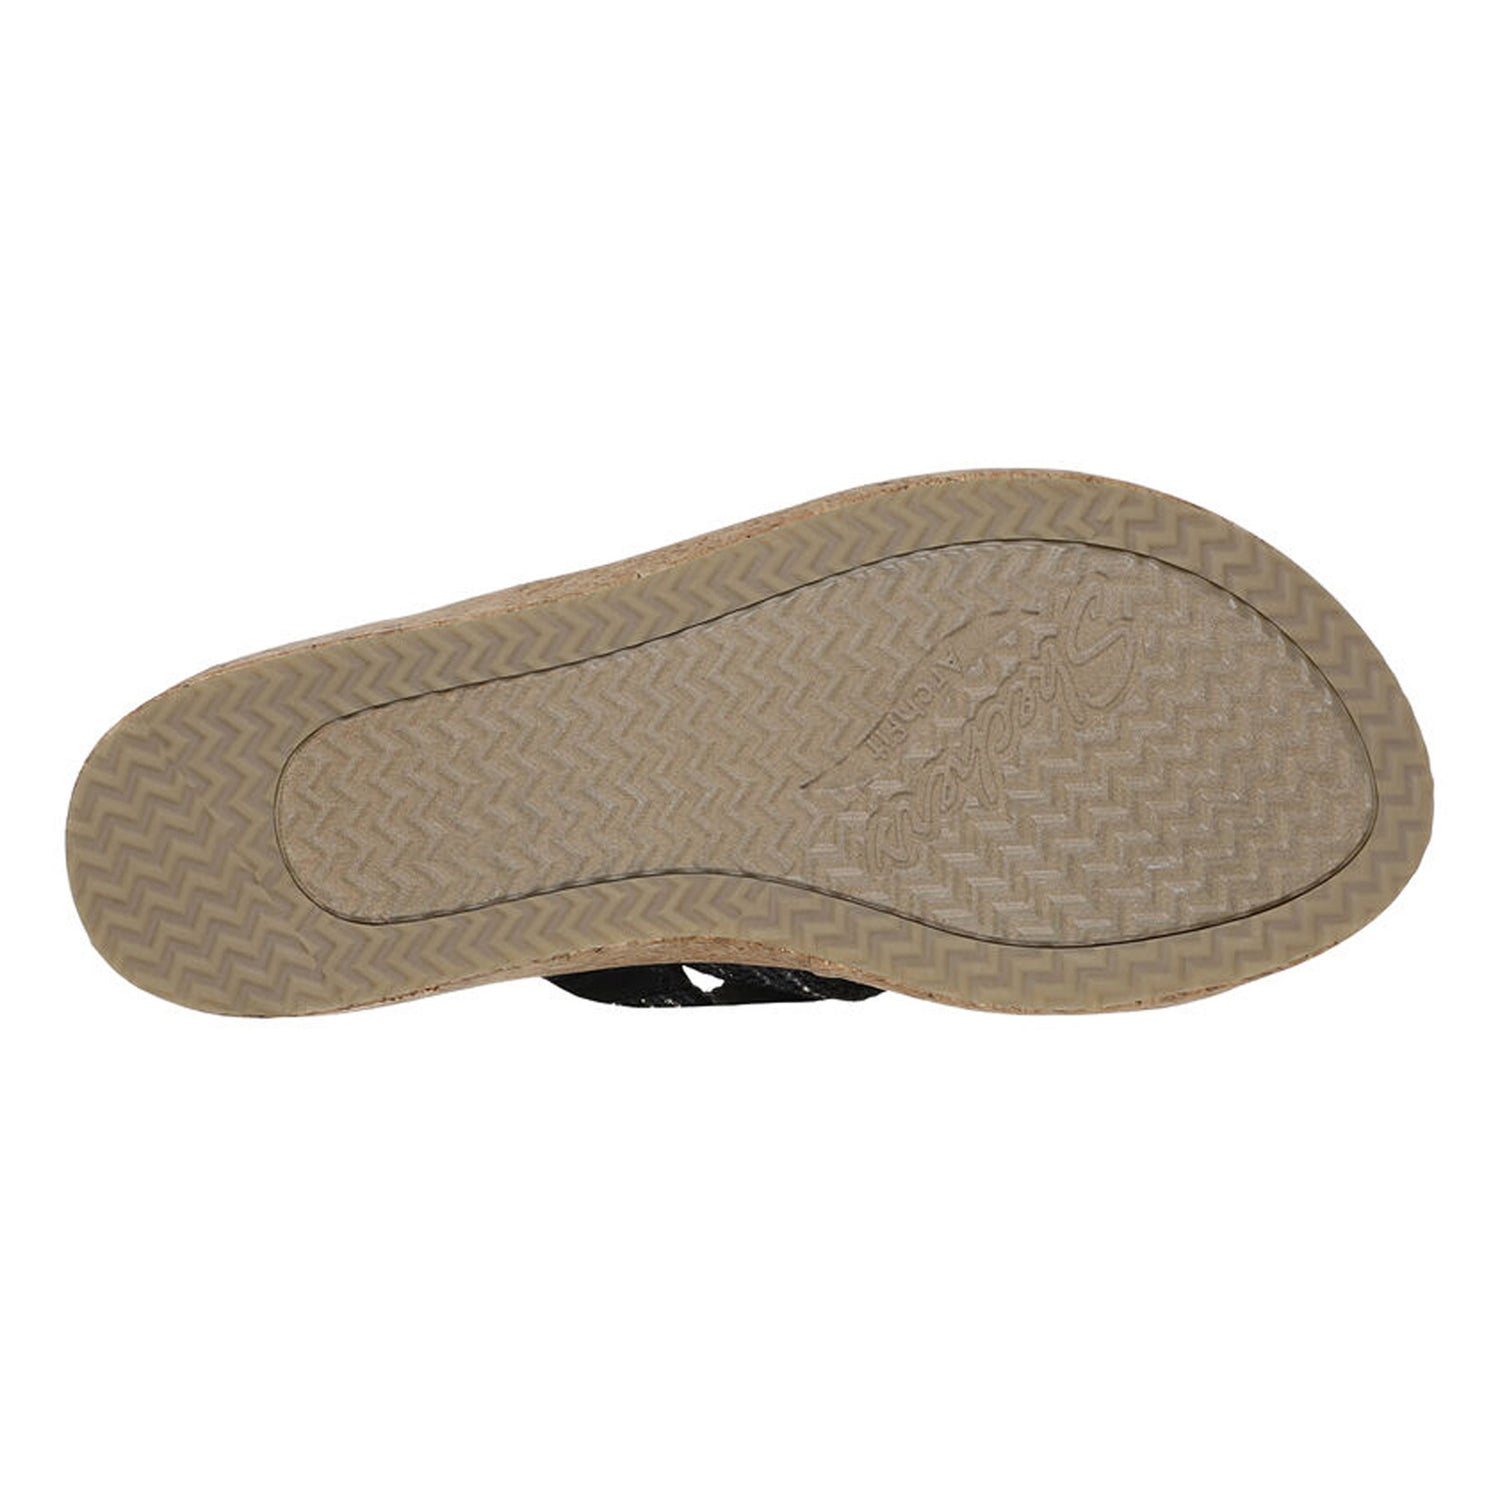 Peltz Shoes  Women's Skechers Arch Fit Beverlee - Always Classy Sandal Black 119548-BLK